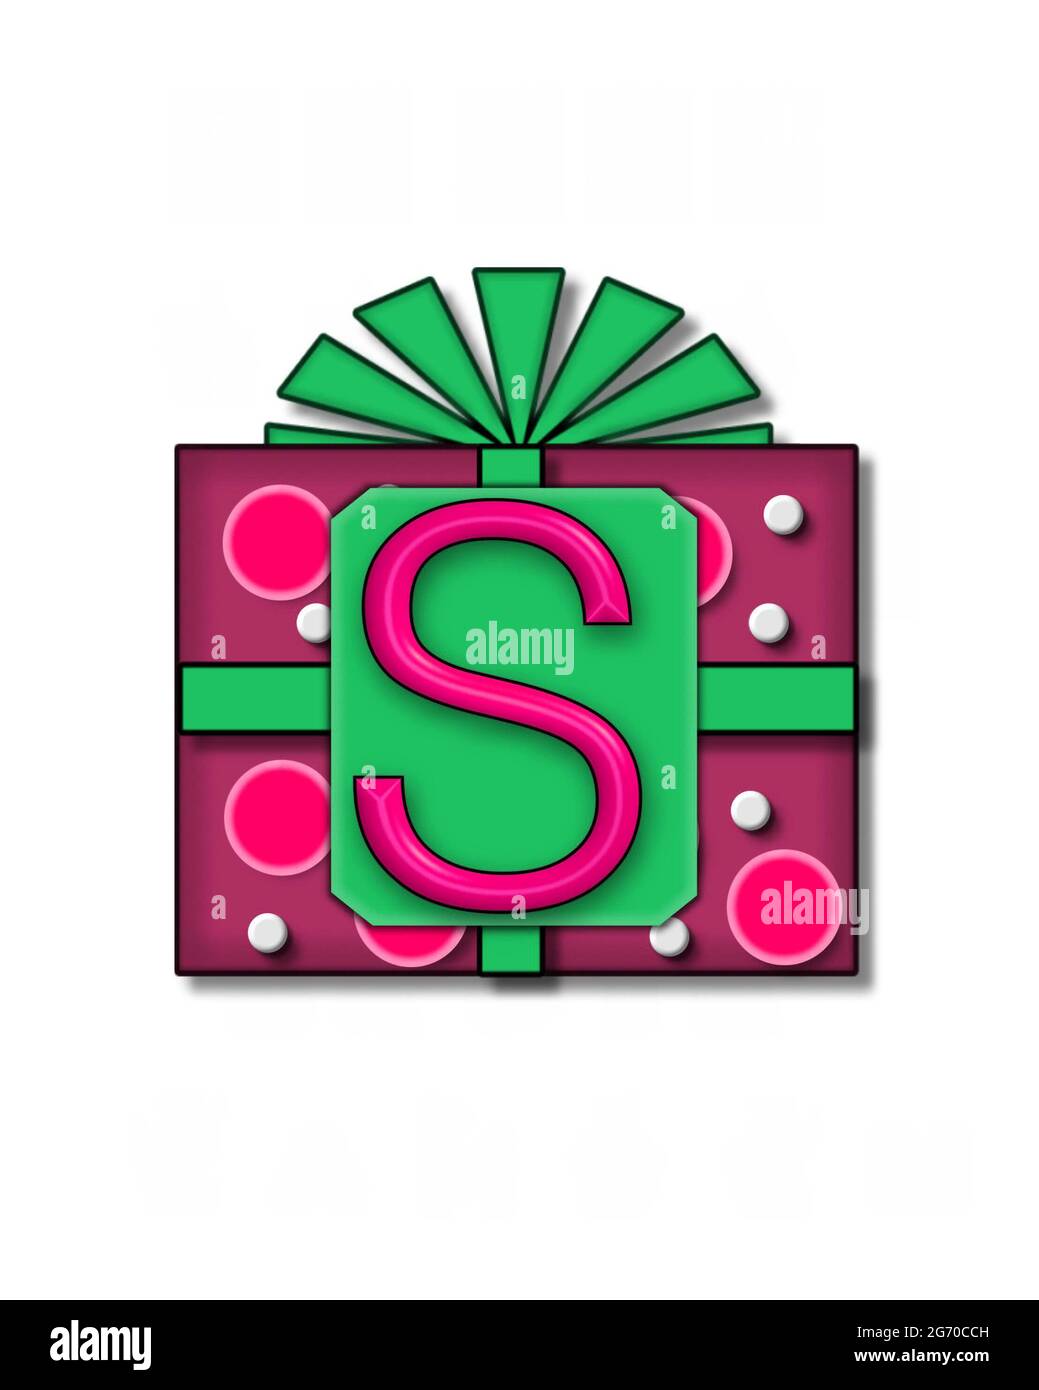 La lettre S, dans l'ensemble de lettres « Gift Packaged », est affichée sur  une boîte cadeau colorée, avec un noeud et des pois Photo Stock - Alamy